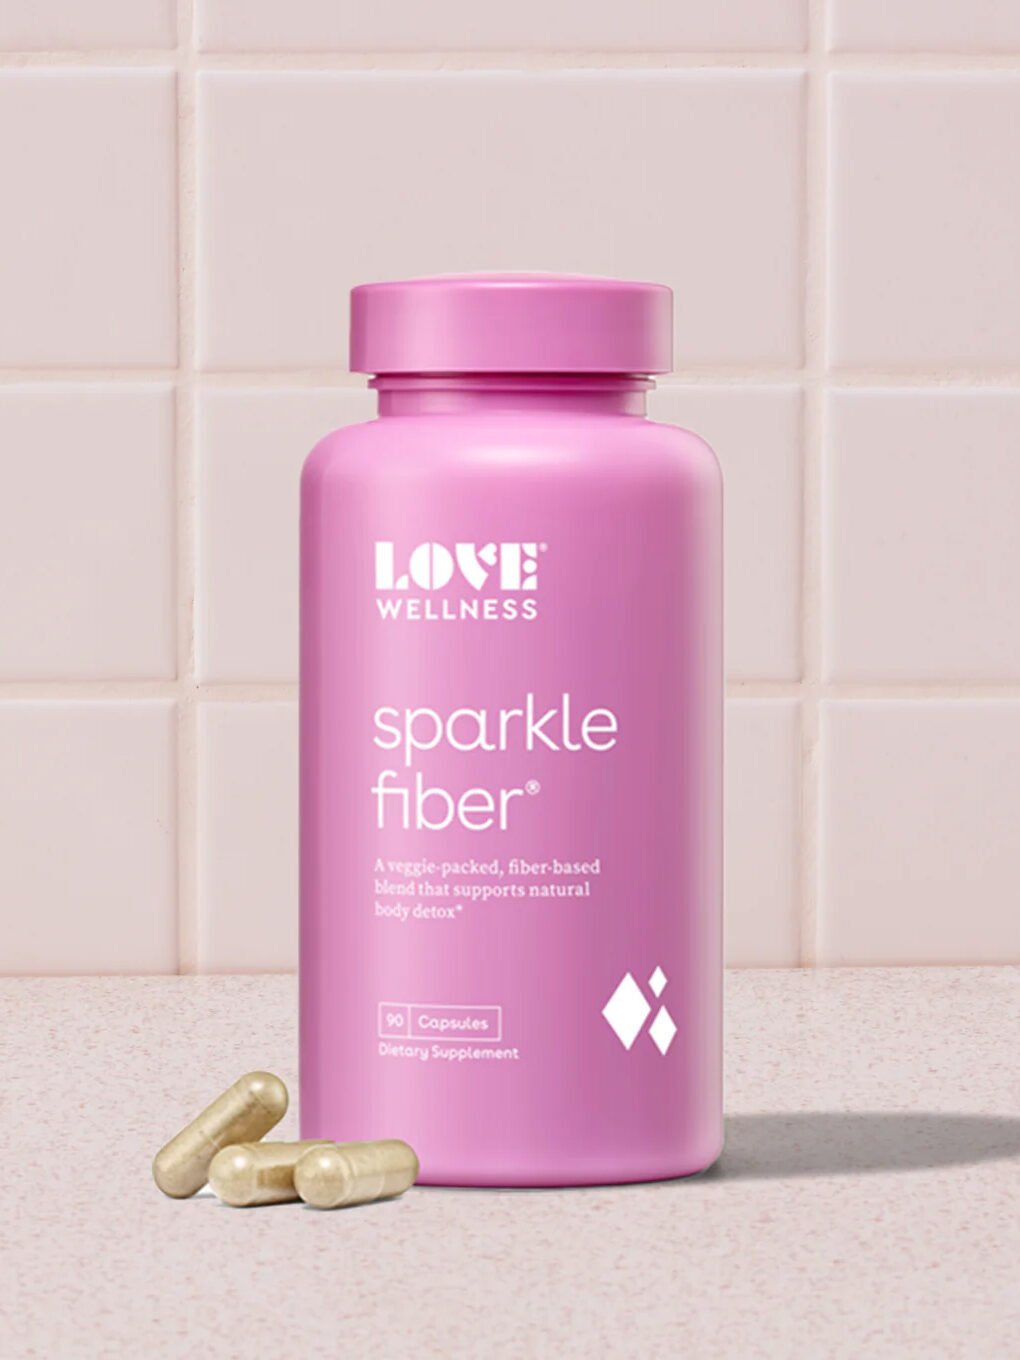 Love Wellness fiber supplements